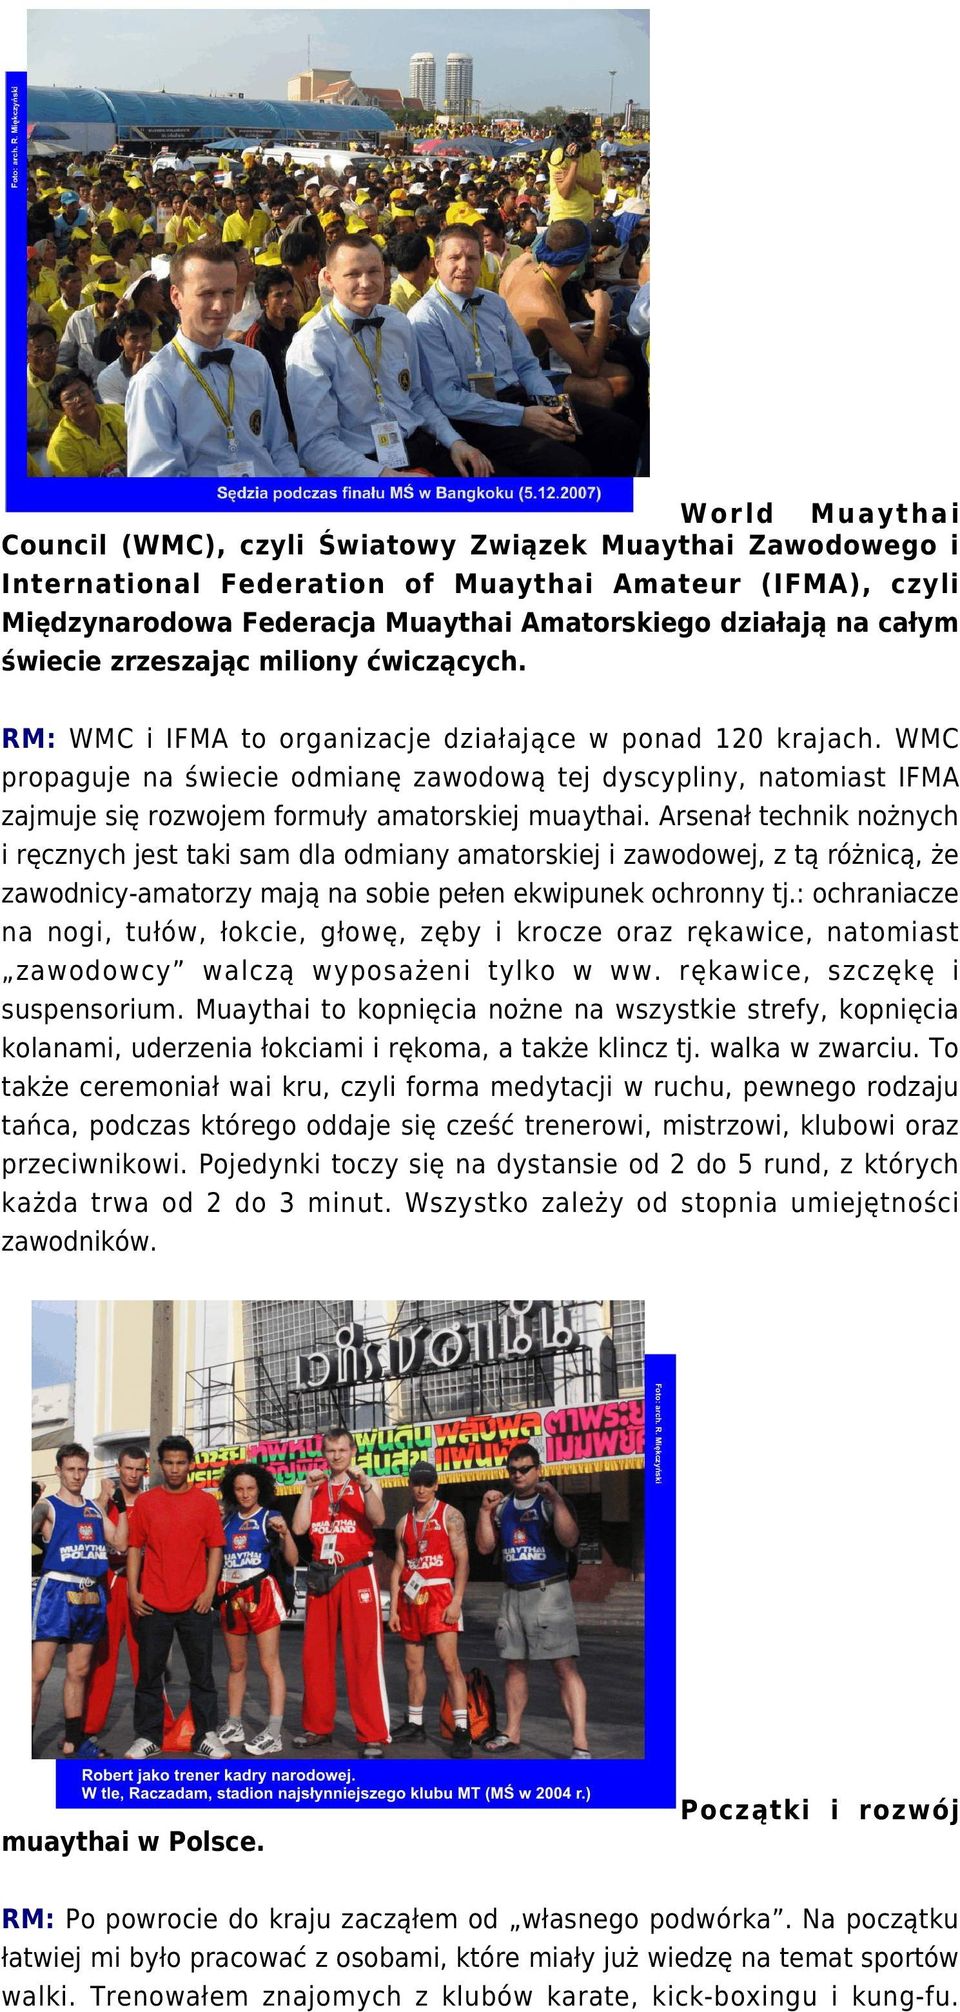 WMC propaguje na świecie odmianę zawodową tej dyscypliny, natomiast IFMA zajmuje się rozwojem formuły amatorskiej muaythai.